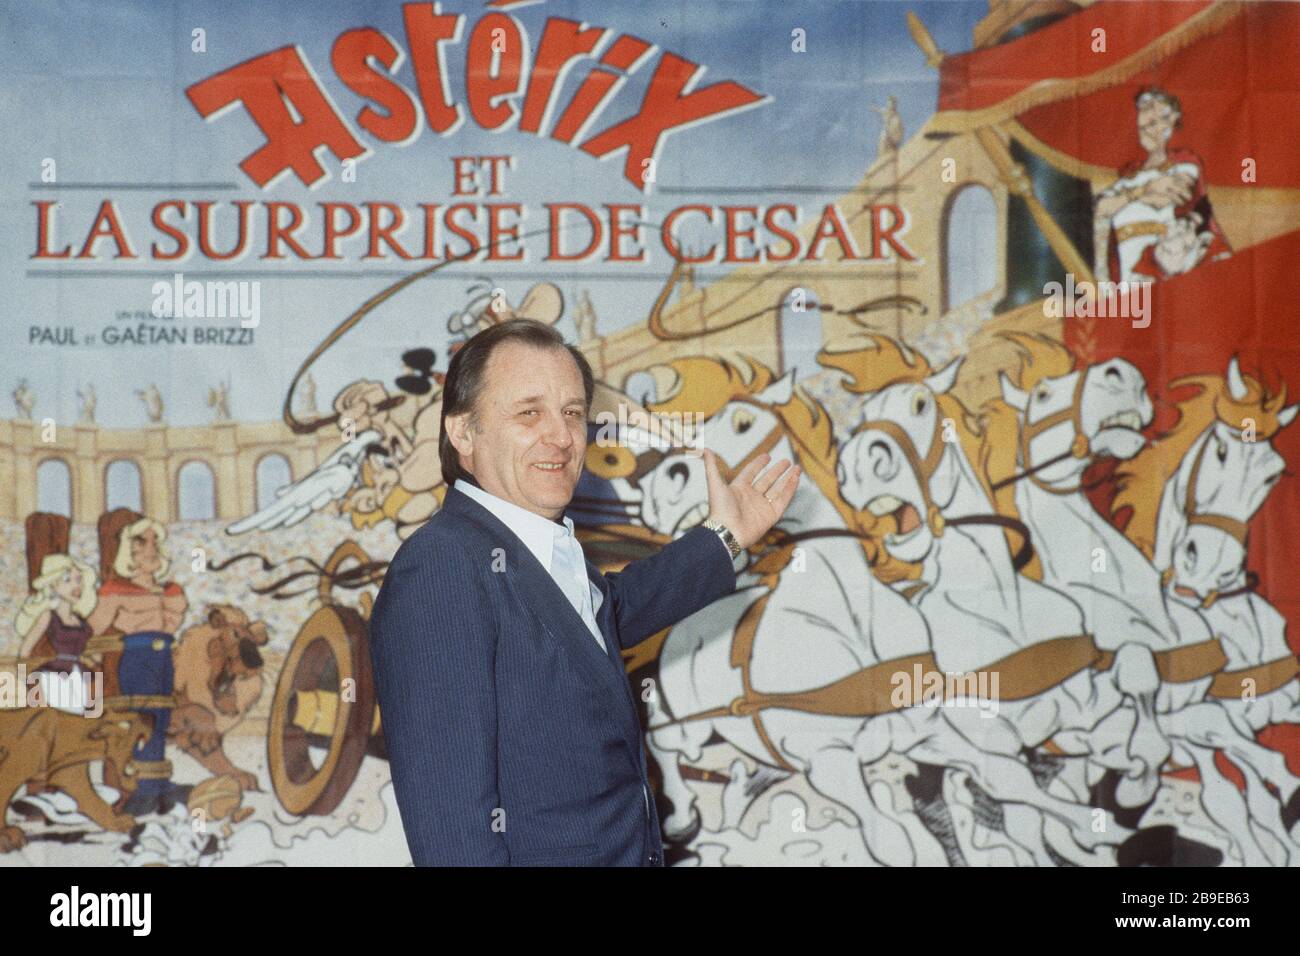 Asterix-Künstler Albert UDERZO ist gestorben. Archivfoto: Albert UDERZO, Frankreich, Comiczeichner, Erfinder der Zeichentrickfigur Asterix, steht vor einer Tapete unter dem Schriftzug "Asterix", Halbfigur, Halbfigur, in den Idefix-Animationsstudios Paris, 24. Februar 1986. Comic, Comic, Kinderbuch, Autor, Autor, Zeichner, Comic-Held, Held, Asterix und Obelix, Gauls, Cartoon, Hinkelstein; ? SVEN SIMON # Prinzess-Luise-Straße 41 # 45479 Mülheim/R uhr #Tel. 0208/9413250 # Fax. 0208/9413260 # GLSB ank, Kontonr.: 4030 025 100, BLZ 430 609 67 # www.SvenSimon.net. Verwendung w Stockfoto